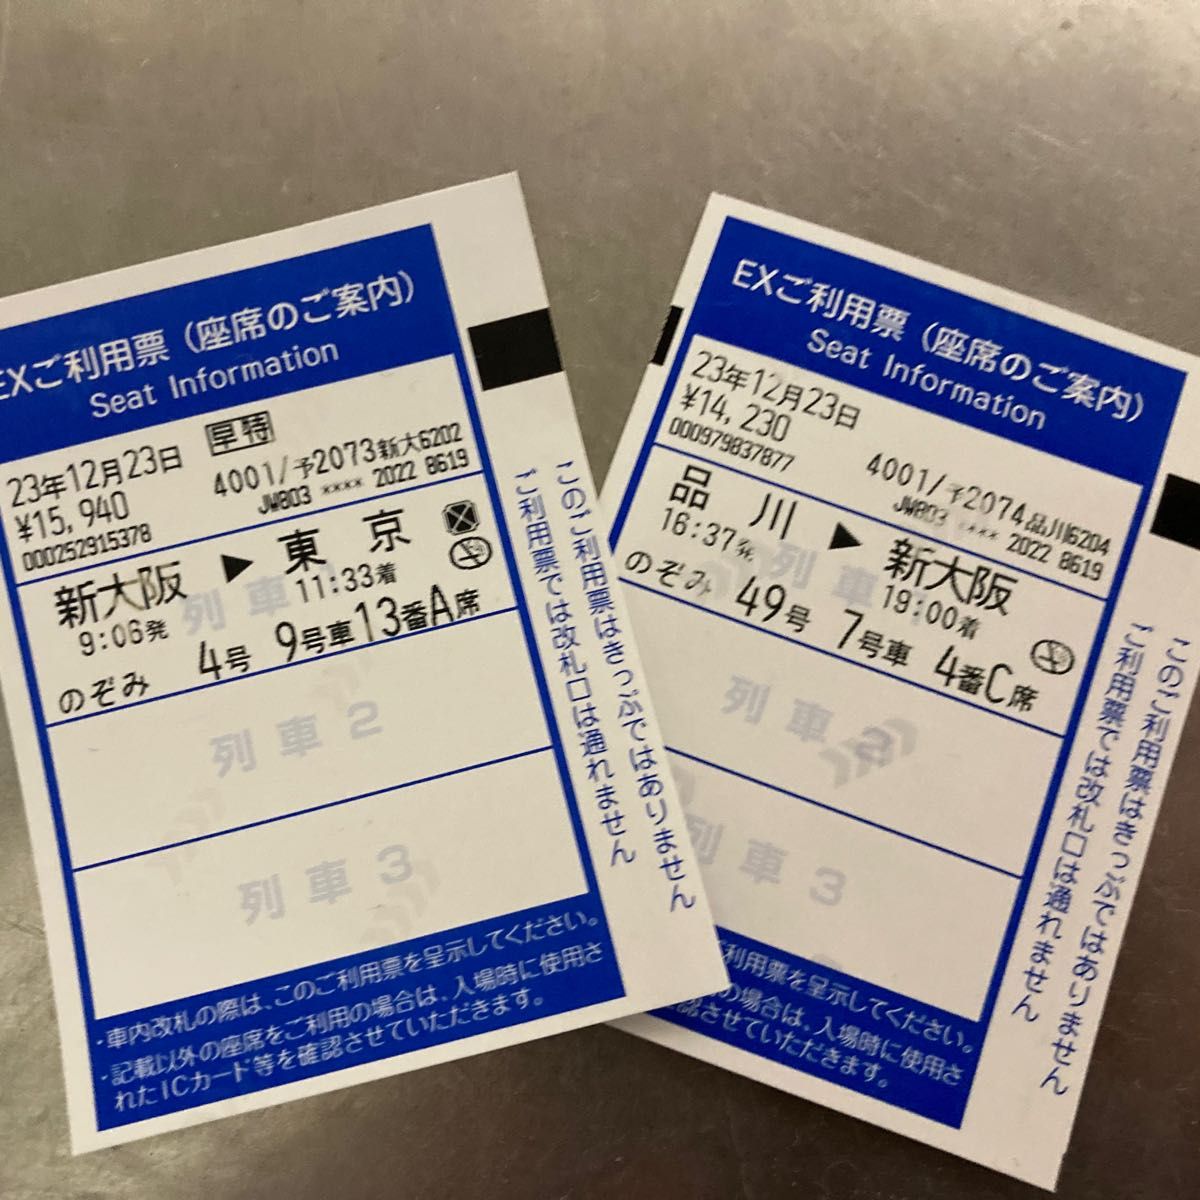 使用済みの新幹線チケットです